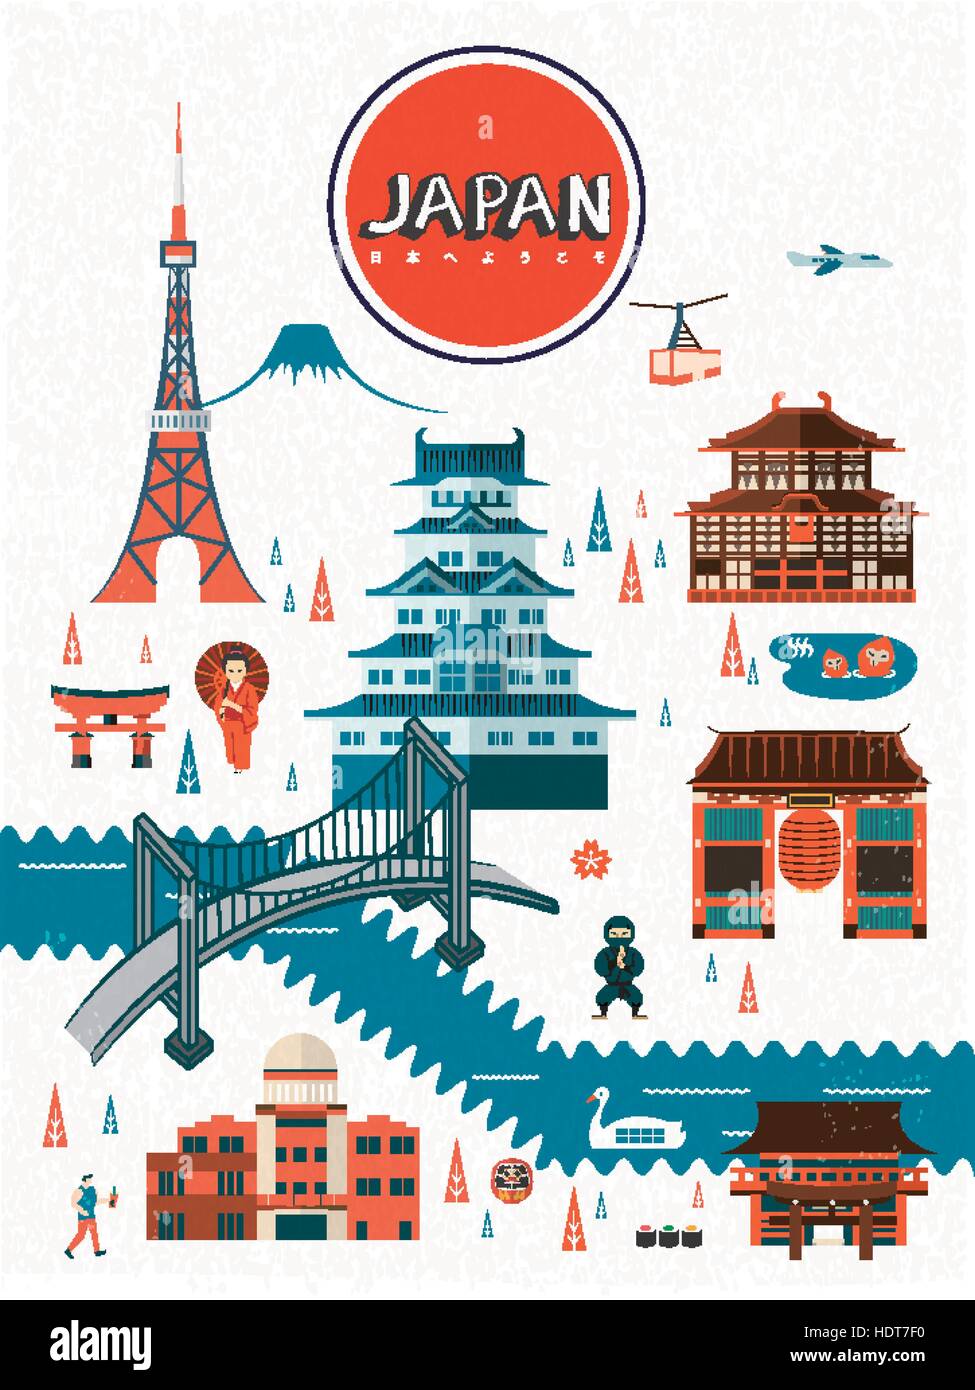 La conception d'affiches de voyage Japon exquis - Bienvenue au Japon dans des mots Illustration de Vecteur